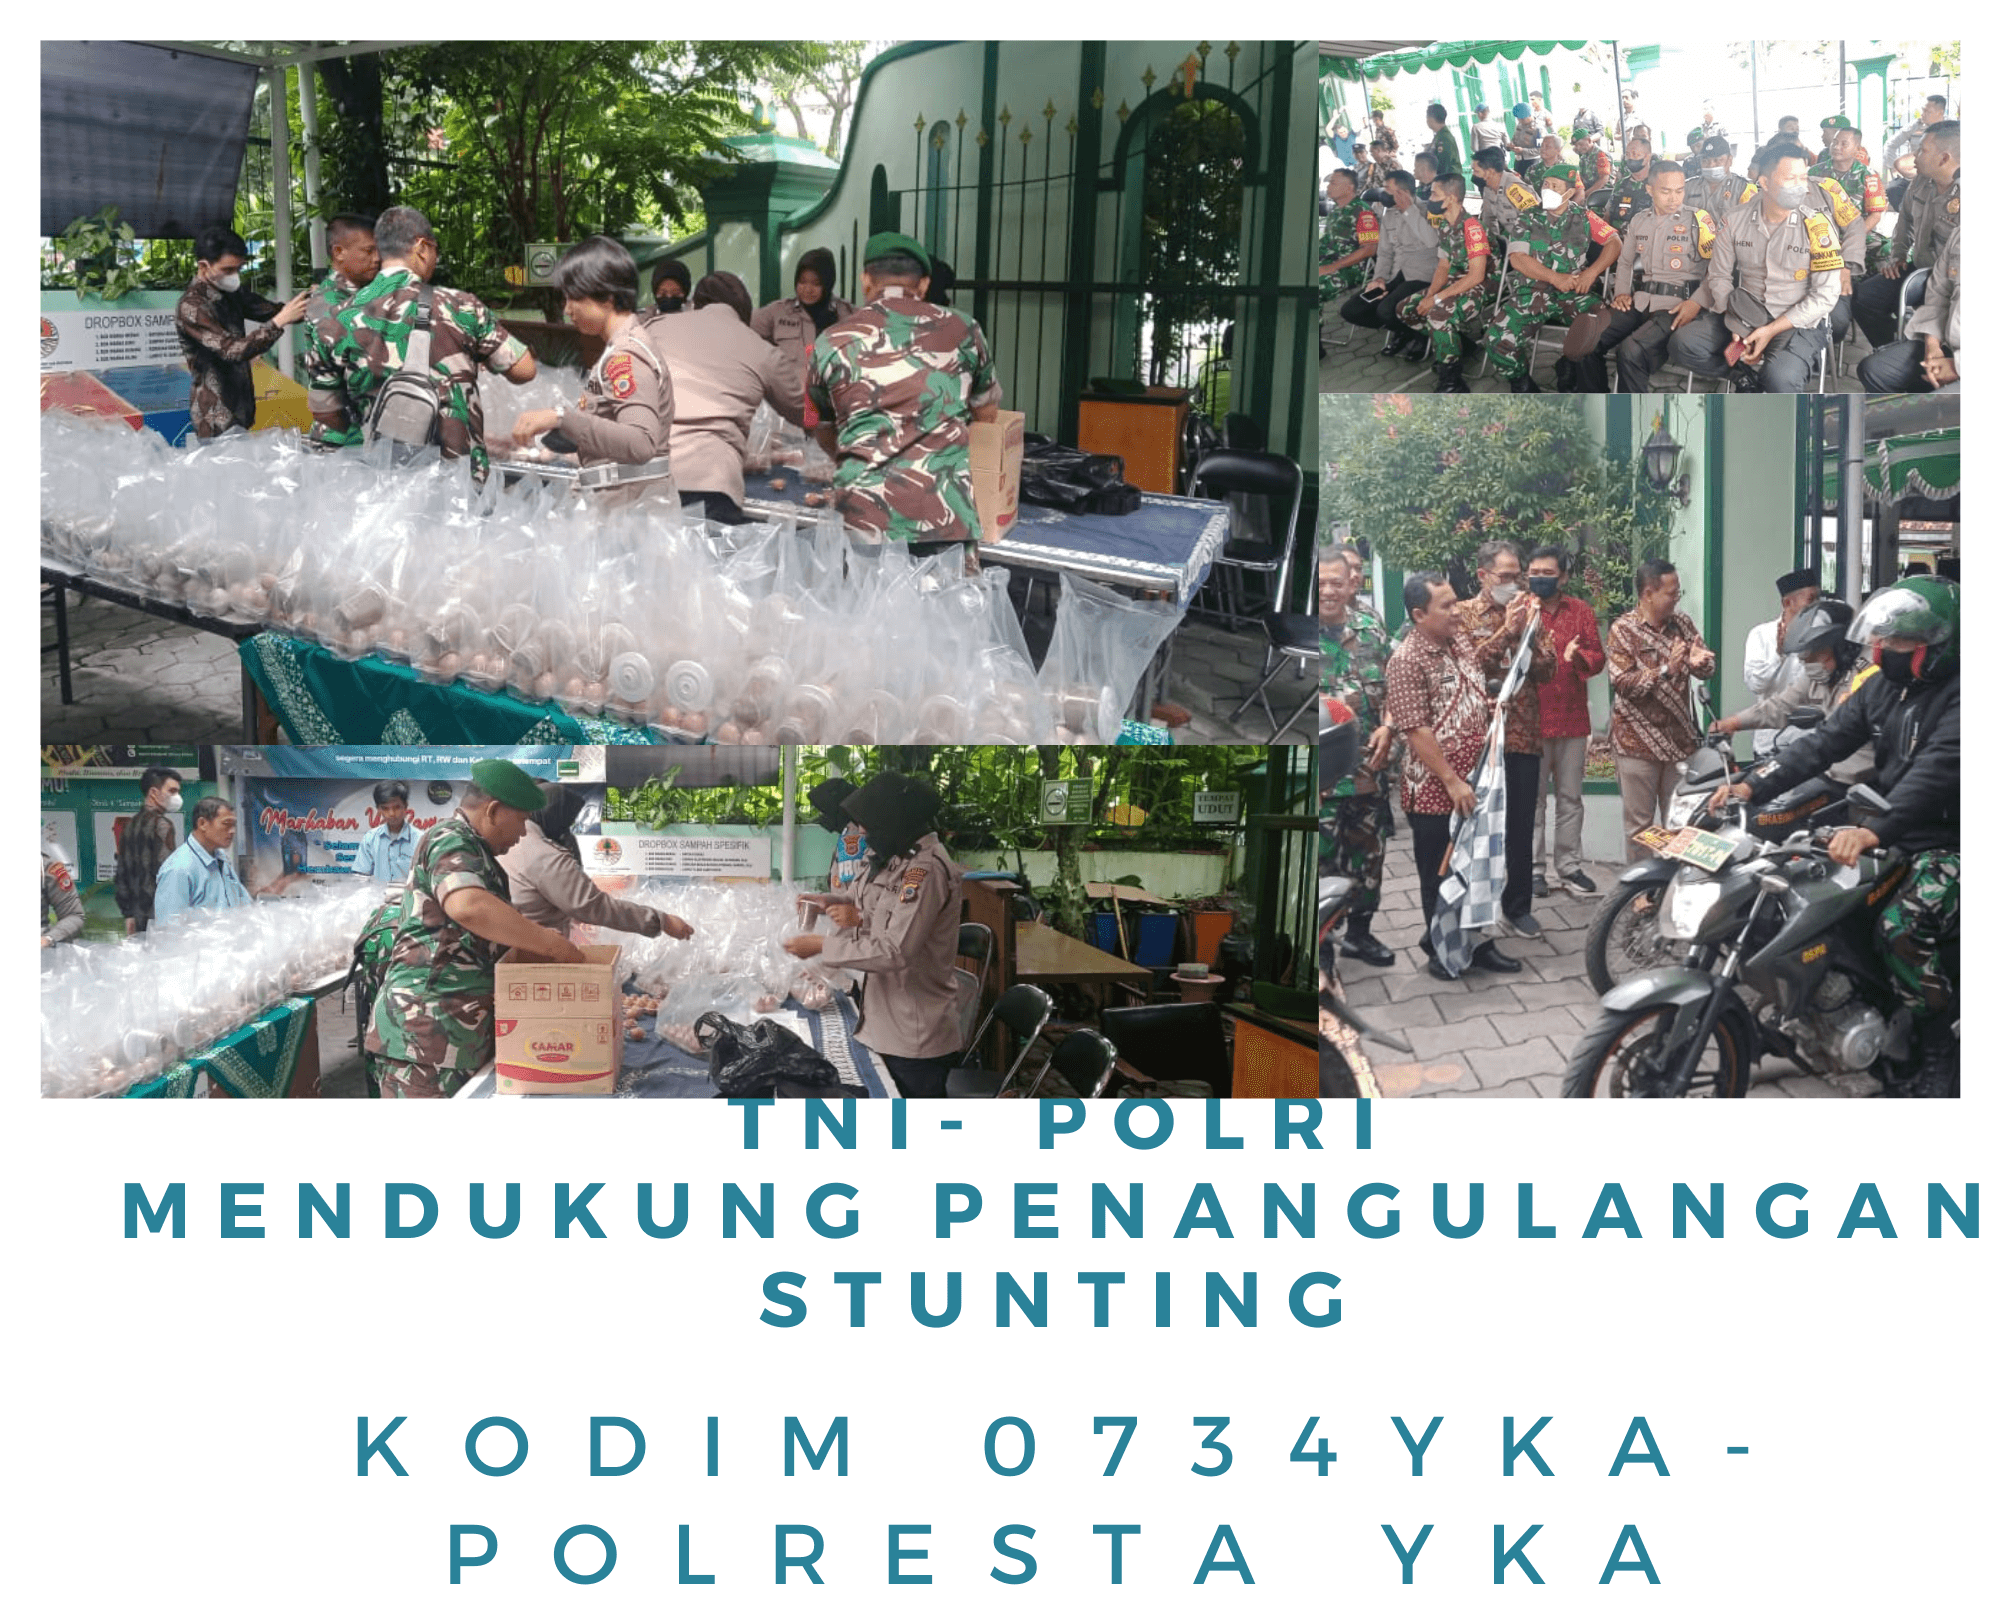 TNI - POLRI MENDUKUNG PENANGGULANGAN STUNTING  KODIM 0734 YKA- POLRESTA YKA